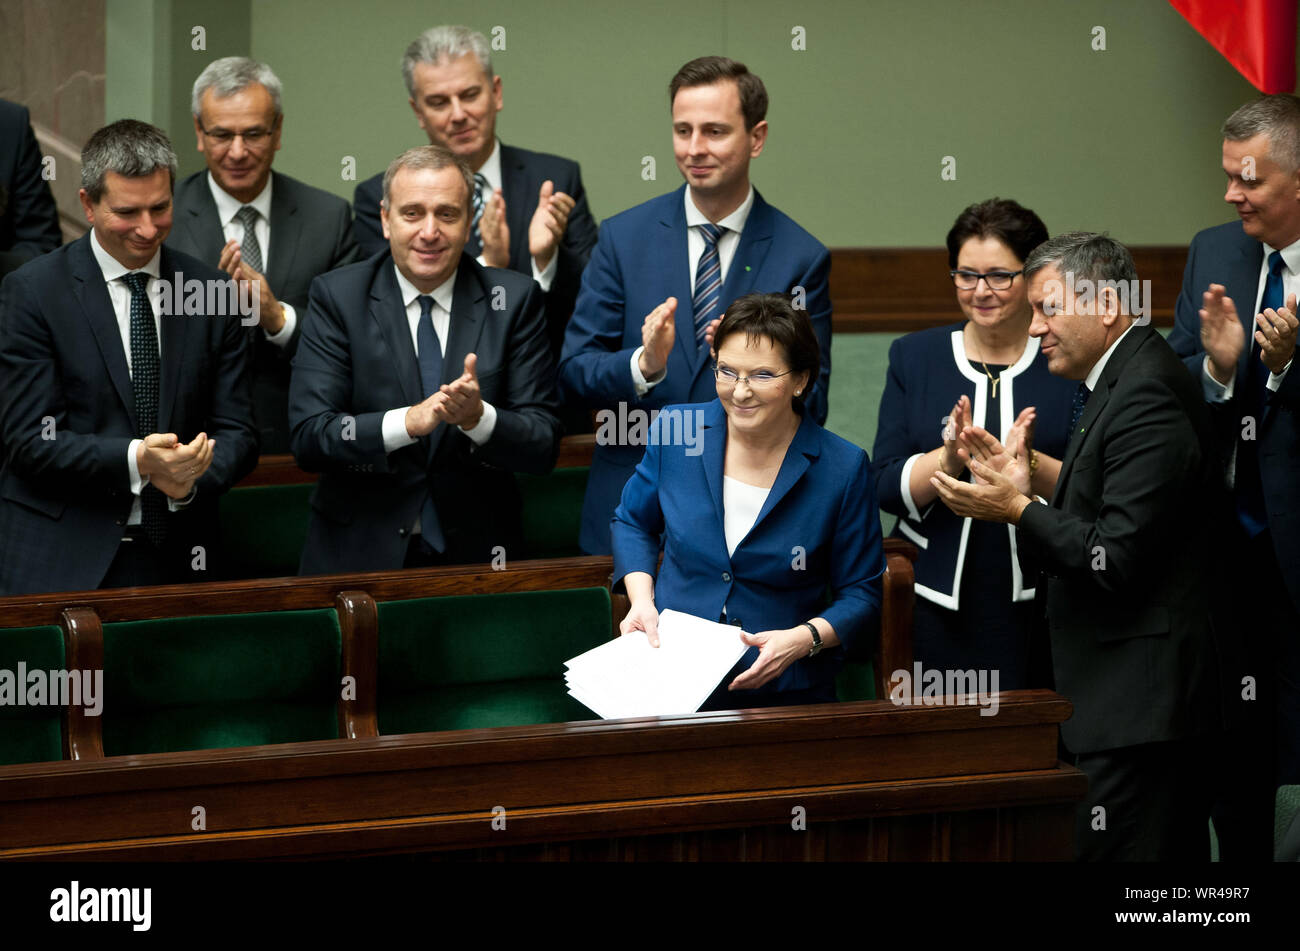 1.10.2014 Warsaw, Poland. Ewa Kopacz at the Sejm. Pictured: Ewa Kopacz, Andrzej Biernat, Cezary Grabarczyk, Mateusz Szczurek, Grzegorz Schetyna, Wlady Stock Photo